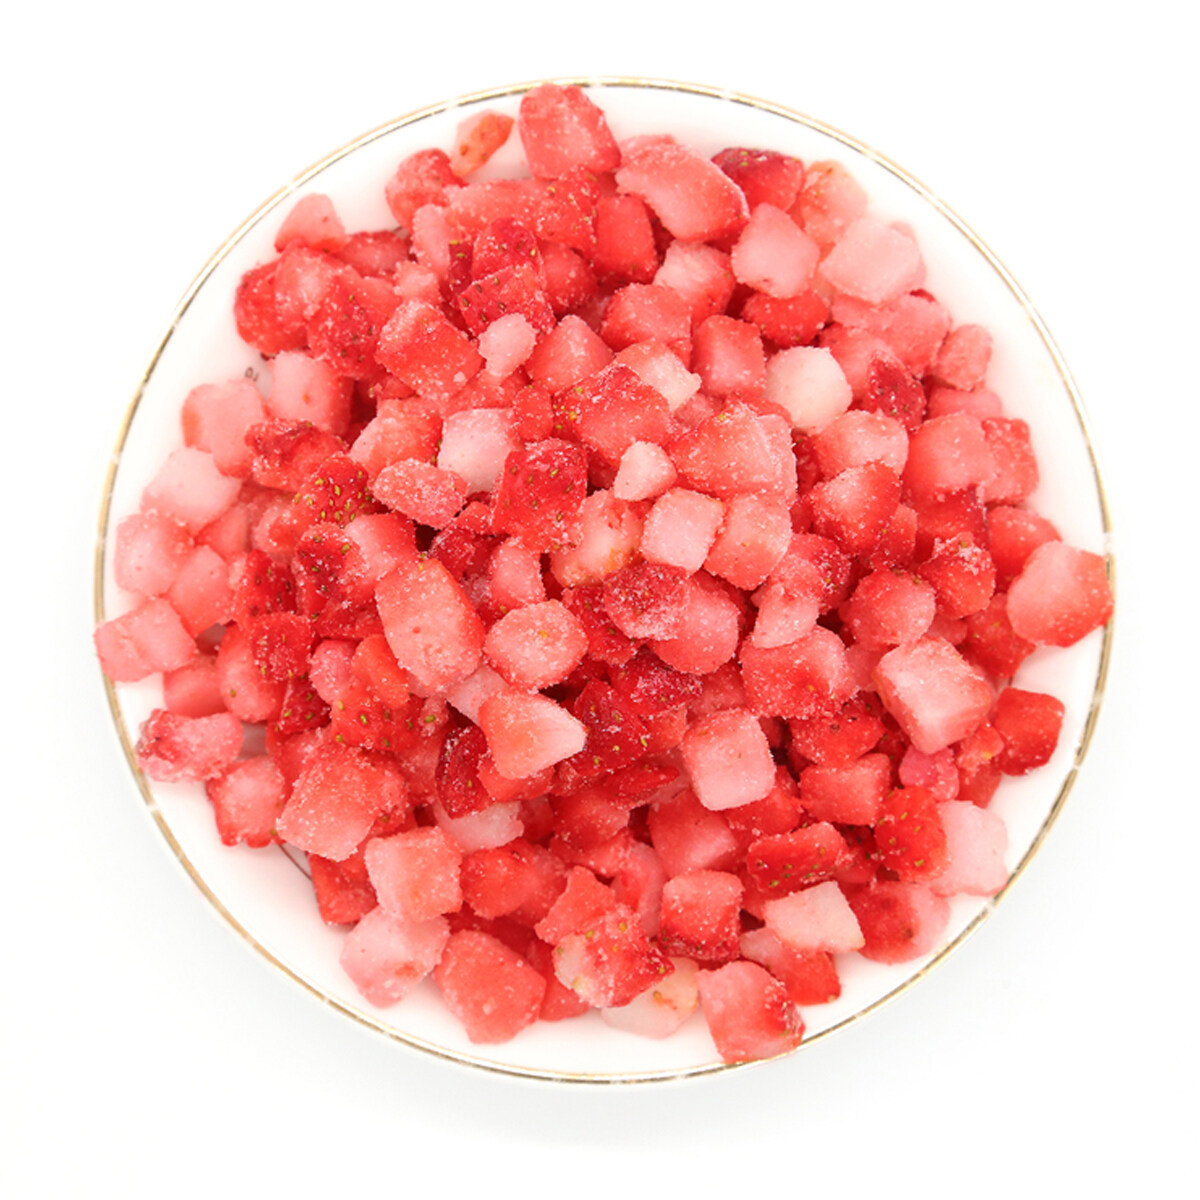 Großhandel gefrorene Lauch -Erdbeere, geschnittene gefrorene Erdbeeren OEM, gefrorene ganze Erdbeere, hochwertige gefrorene Erdungstrowberri, gefrorene Erdbeer -Dices ODM